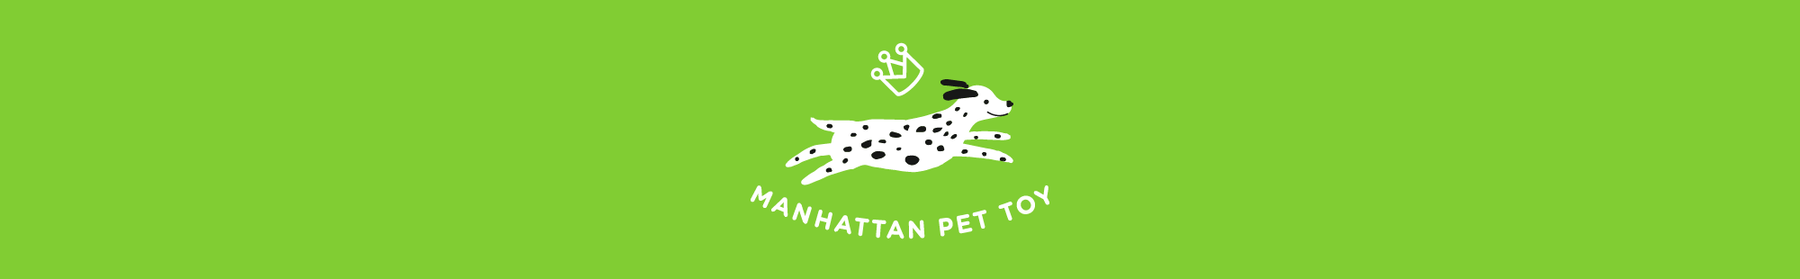 Manhatten Pet Header - Desktop - Running Dalmatian